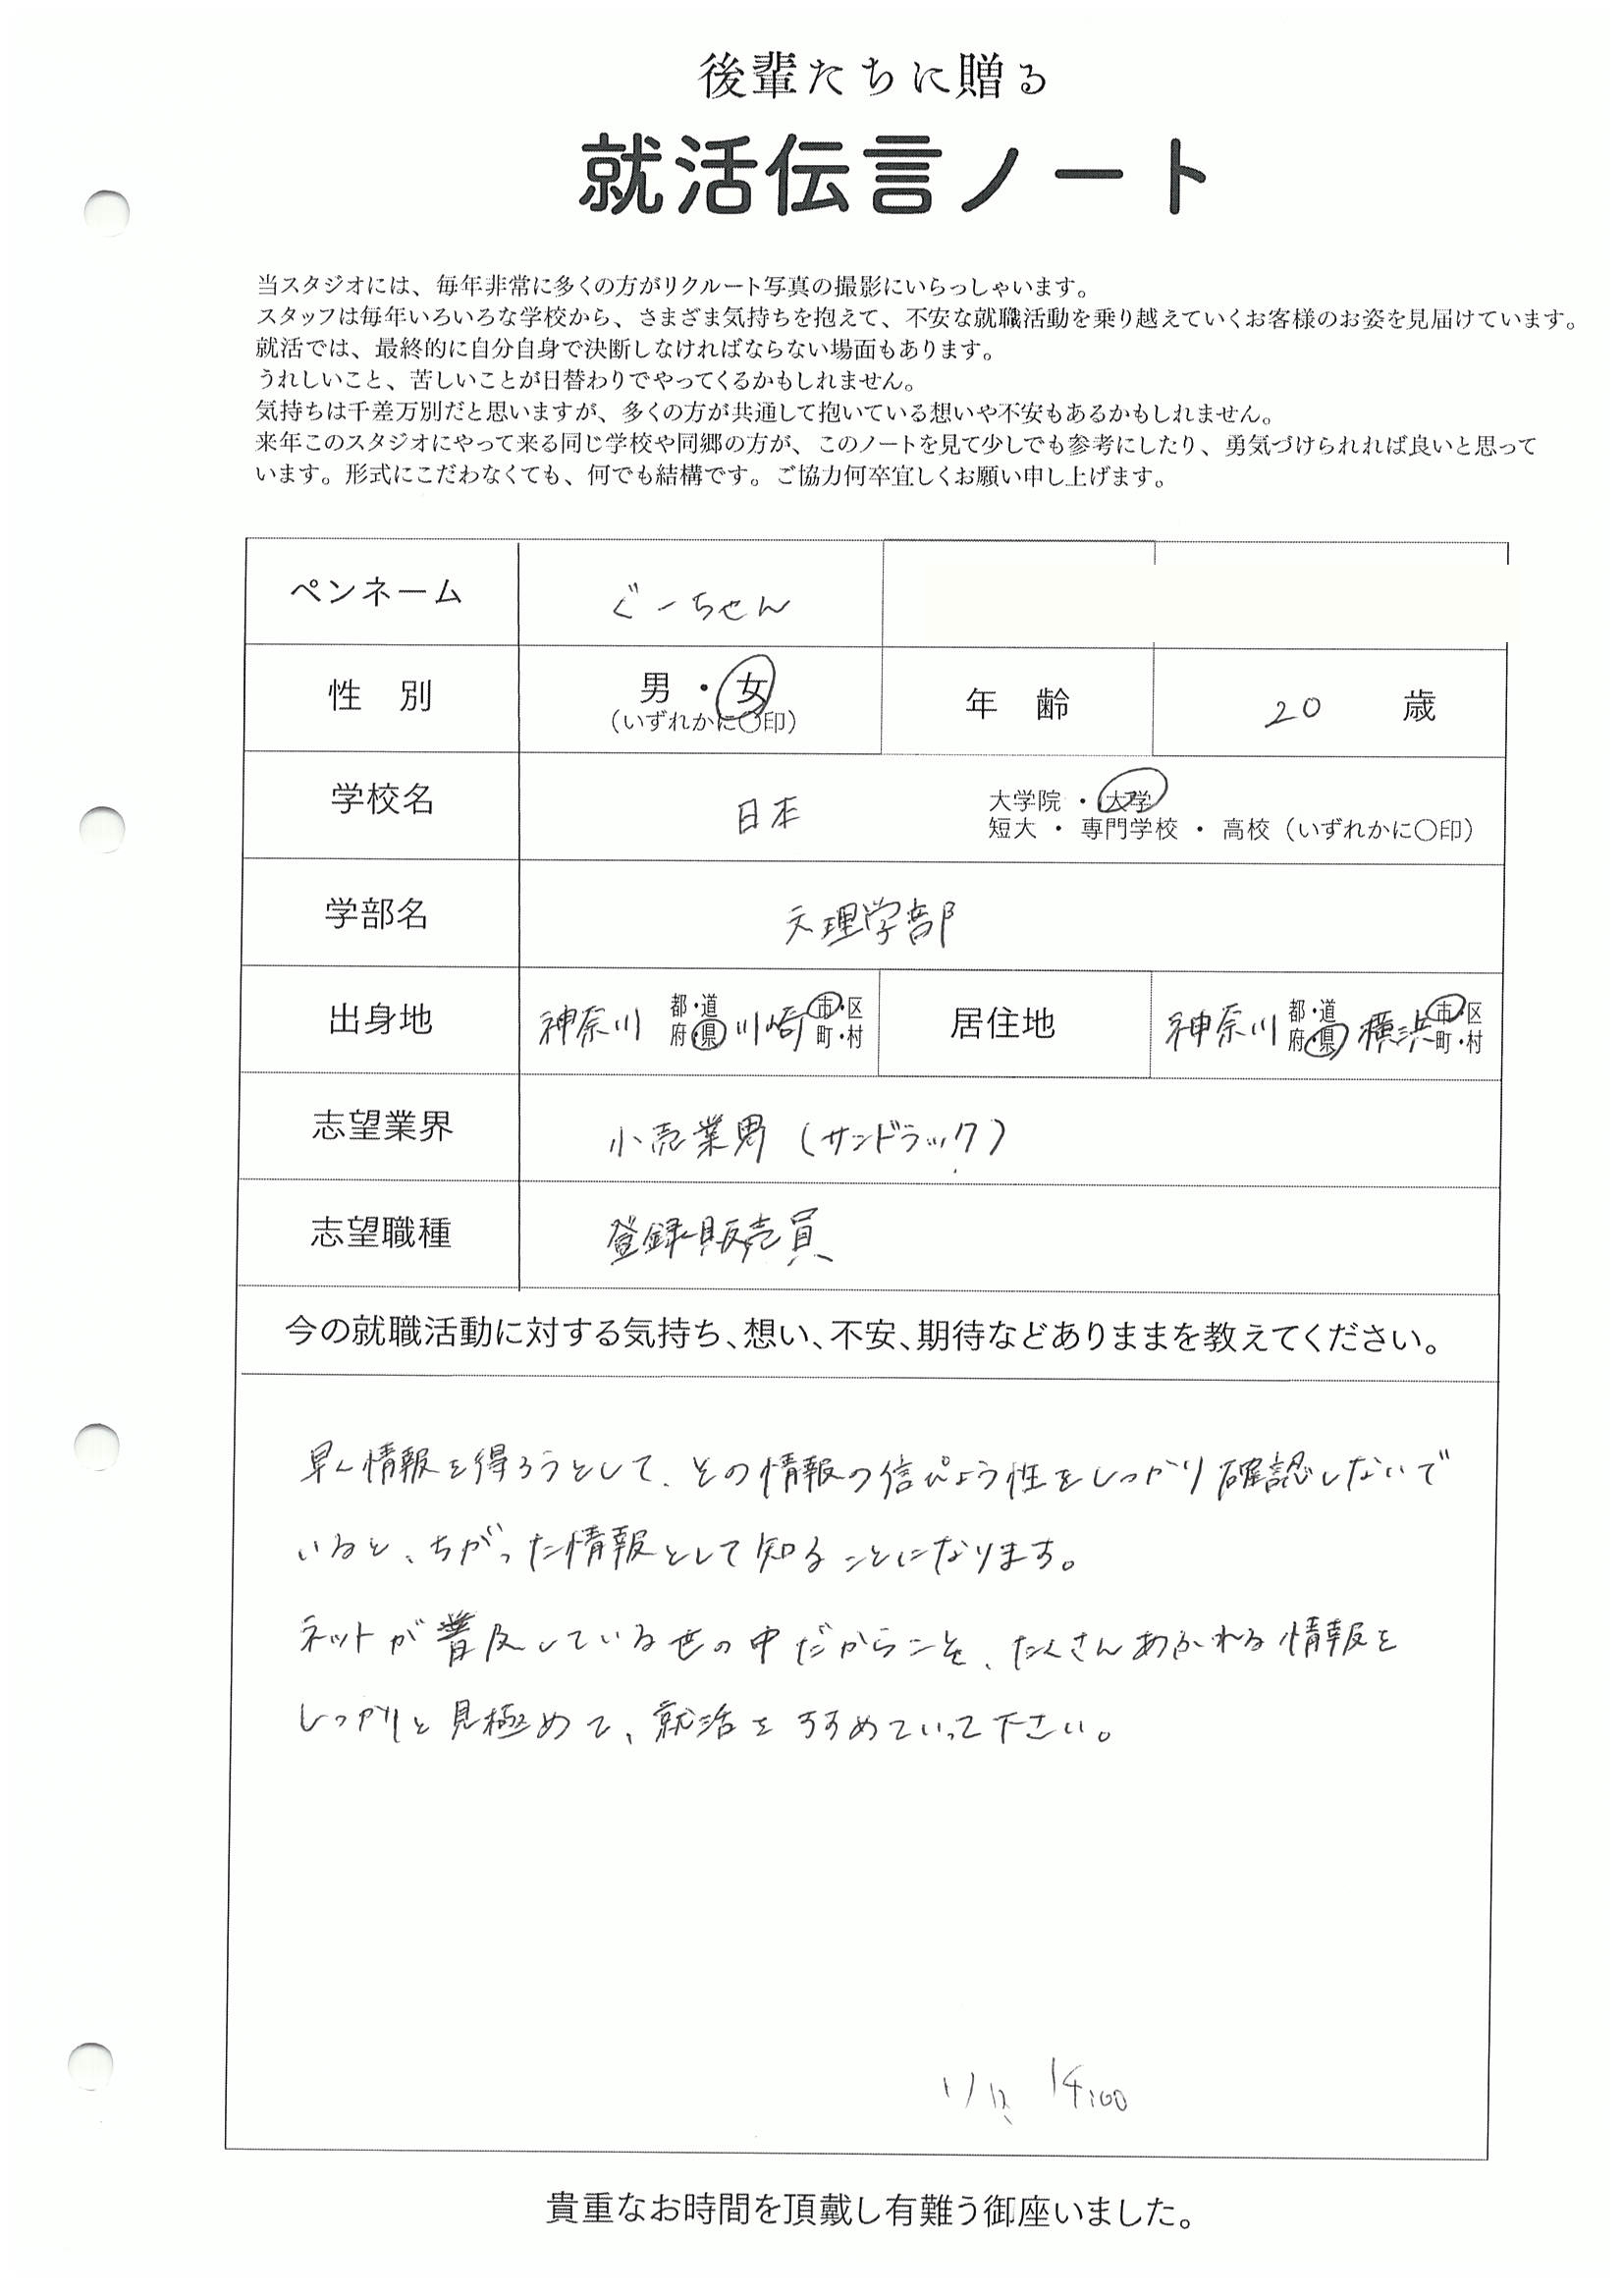 日本大学 文理学部 ぐーちゃんさん の直筆メッセージ　リクルートフォトスタジオで就活証明写真を撮影